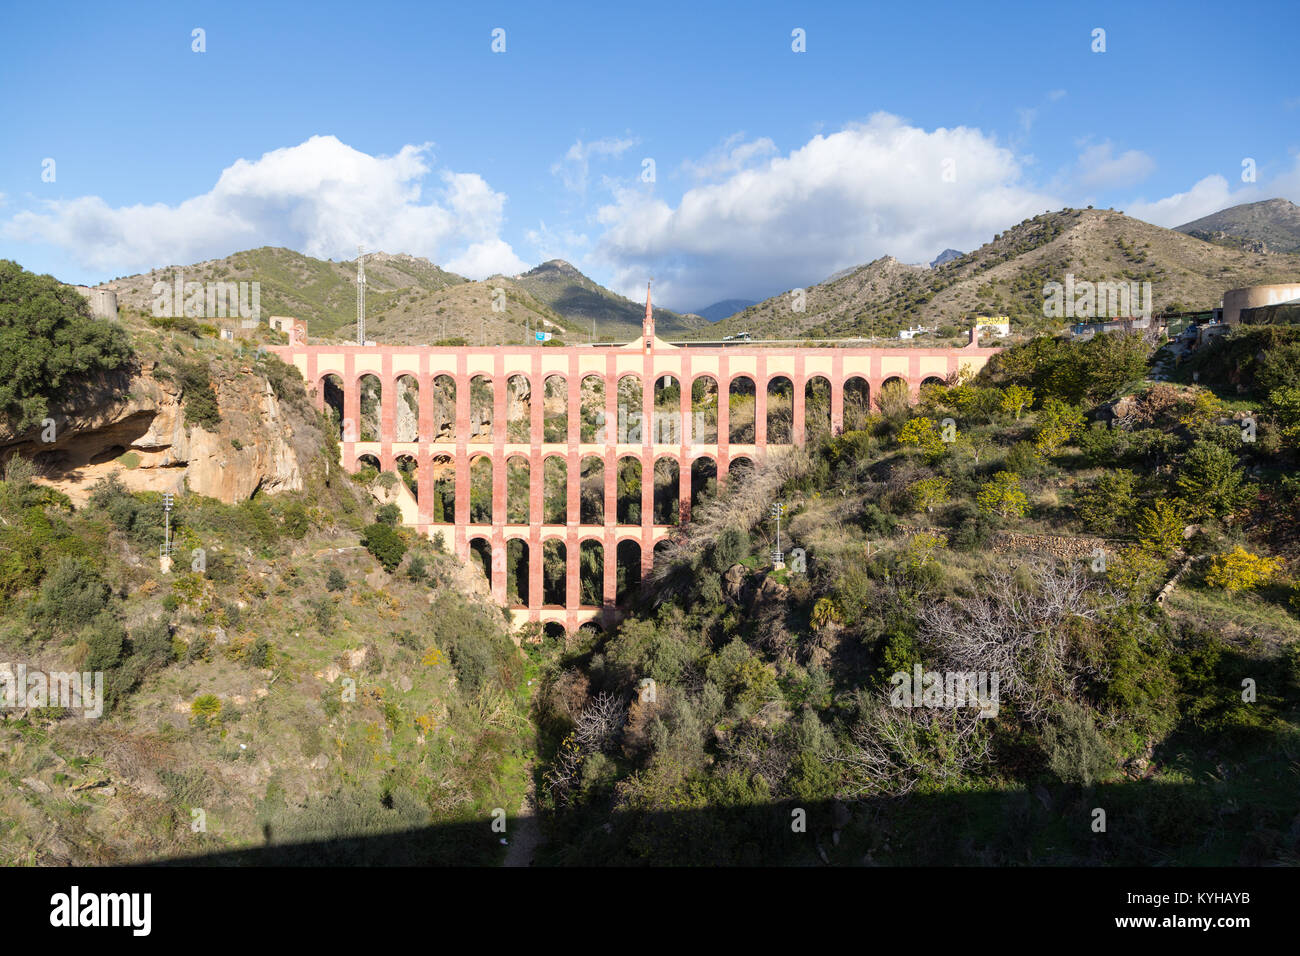 Aqueduc de l'aigle, un aqueduc du 19ème siècle sur le Barranco de la Coladilla de cazadores, Nerja, Malaga, Espagne. Banque D'Images